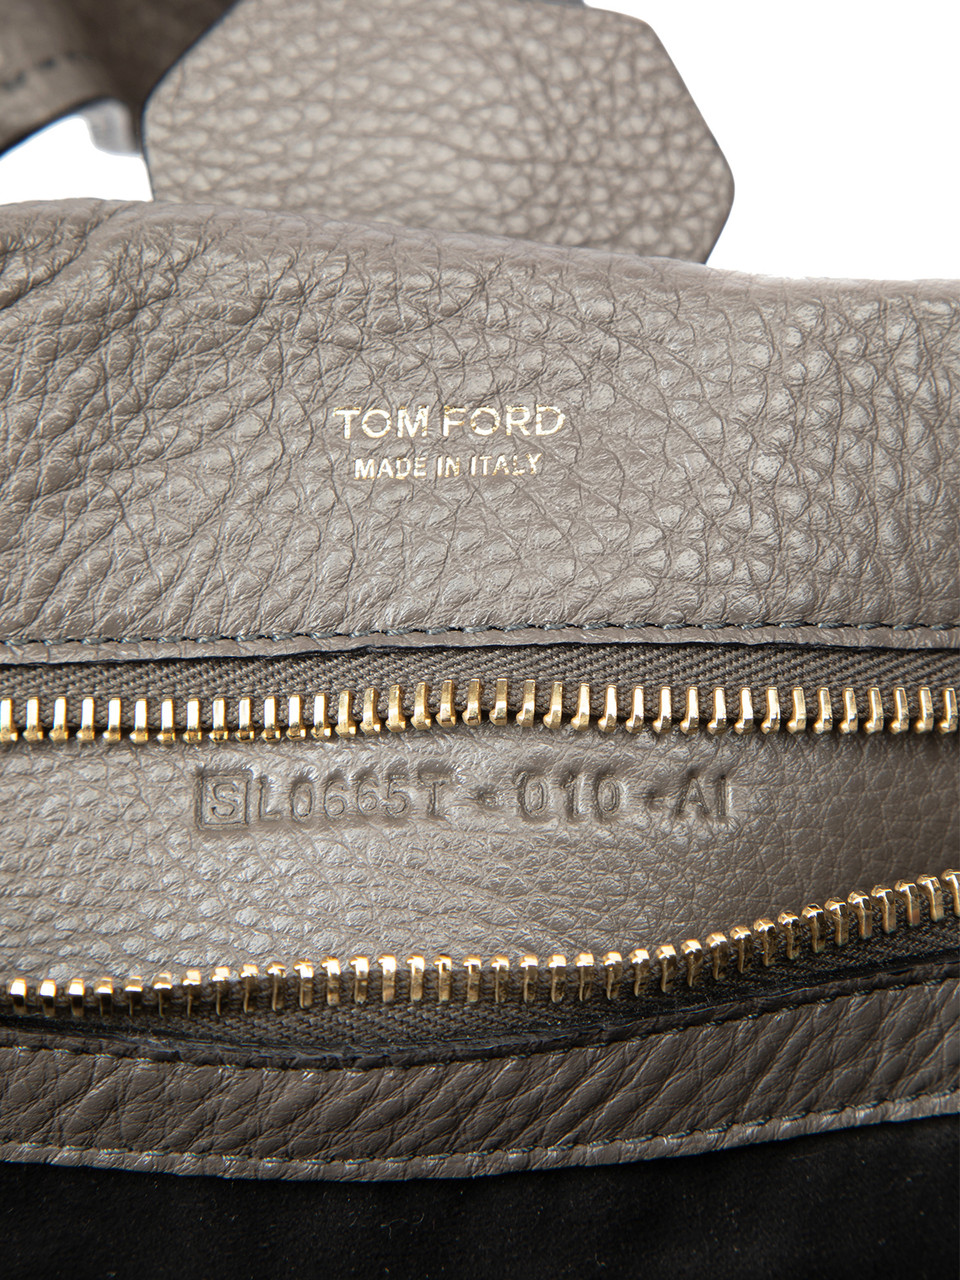 Tom Ford Jennifer Grey Leather Side Zip Hobo Bag